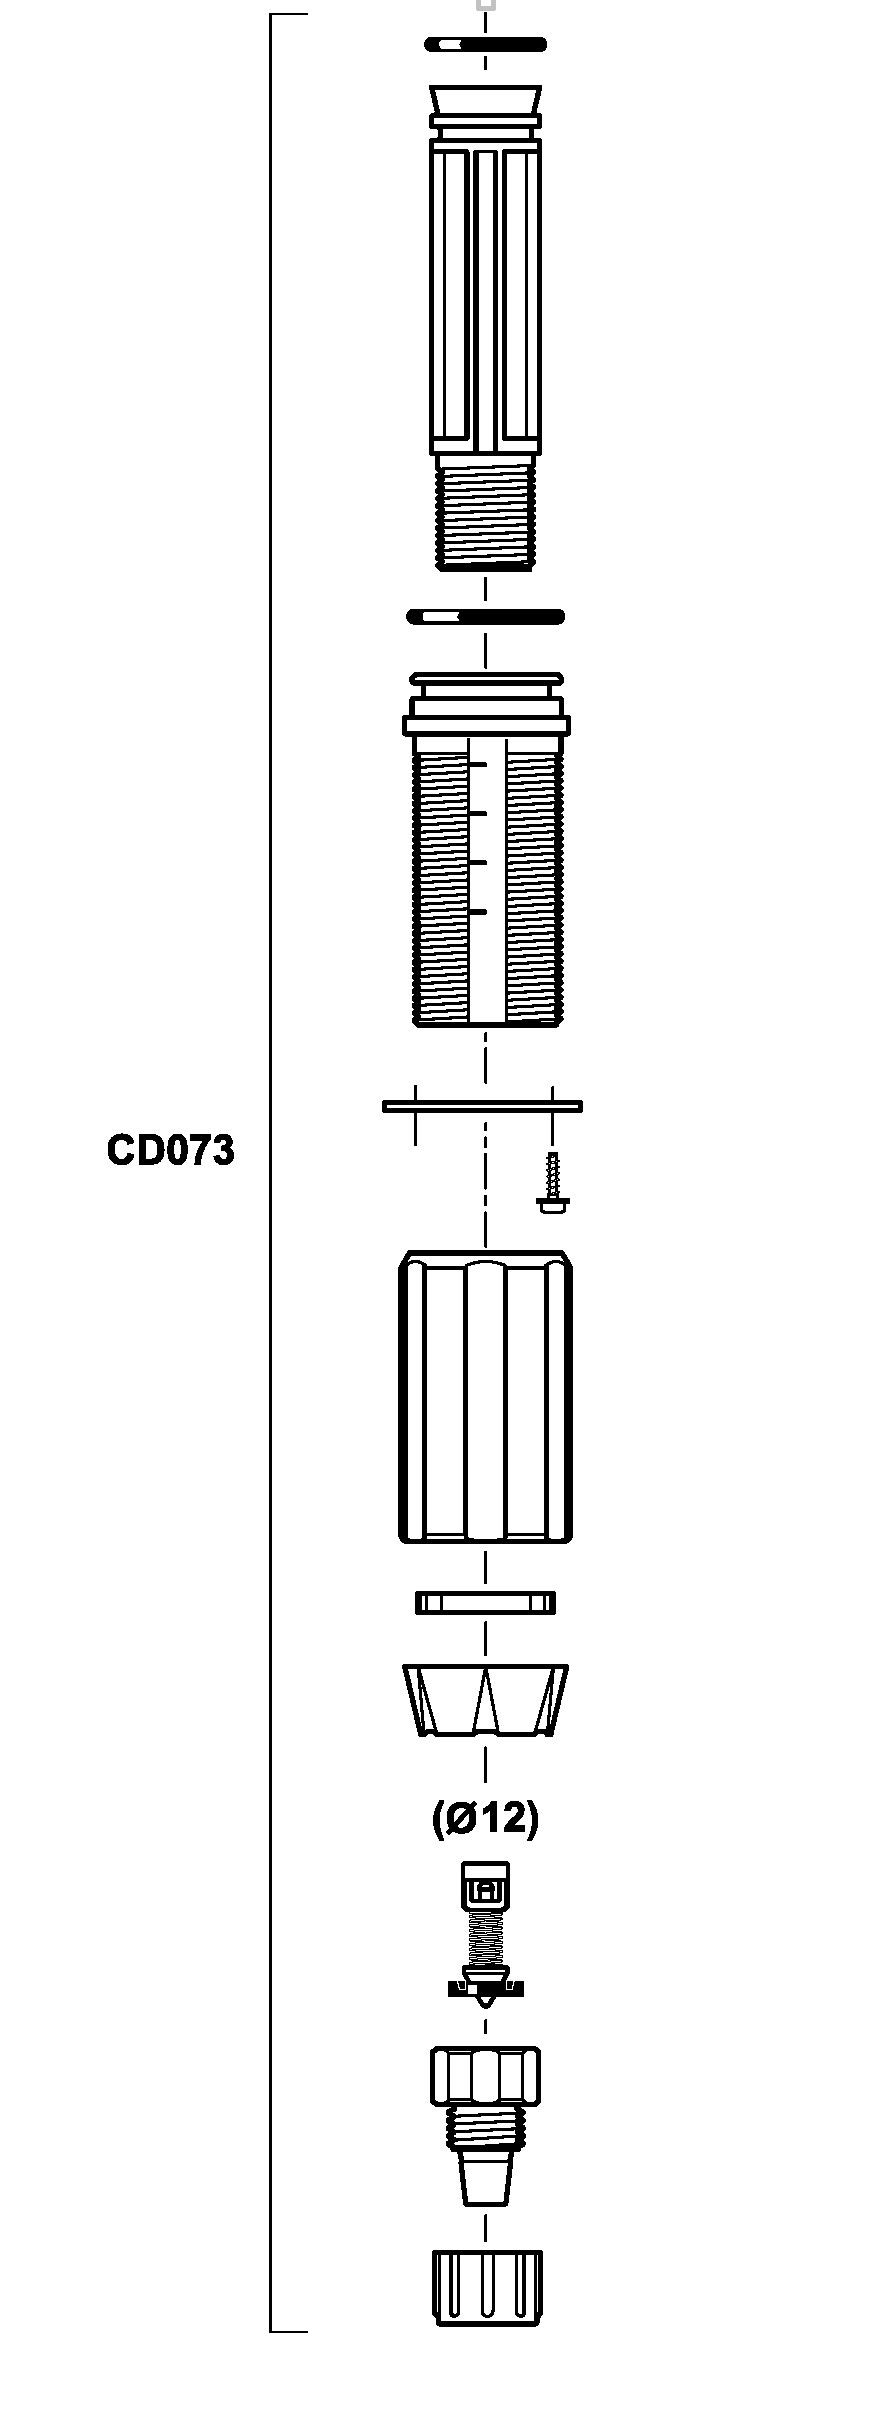 CD073VF - kit dosing part in VF for D25RE4